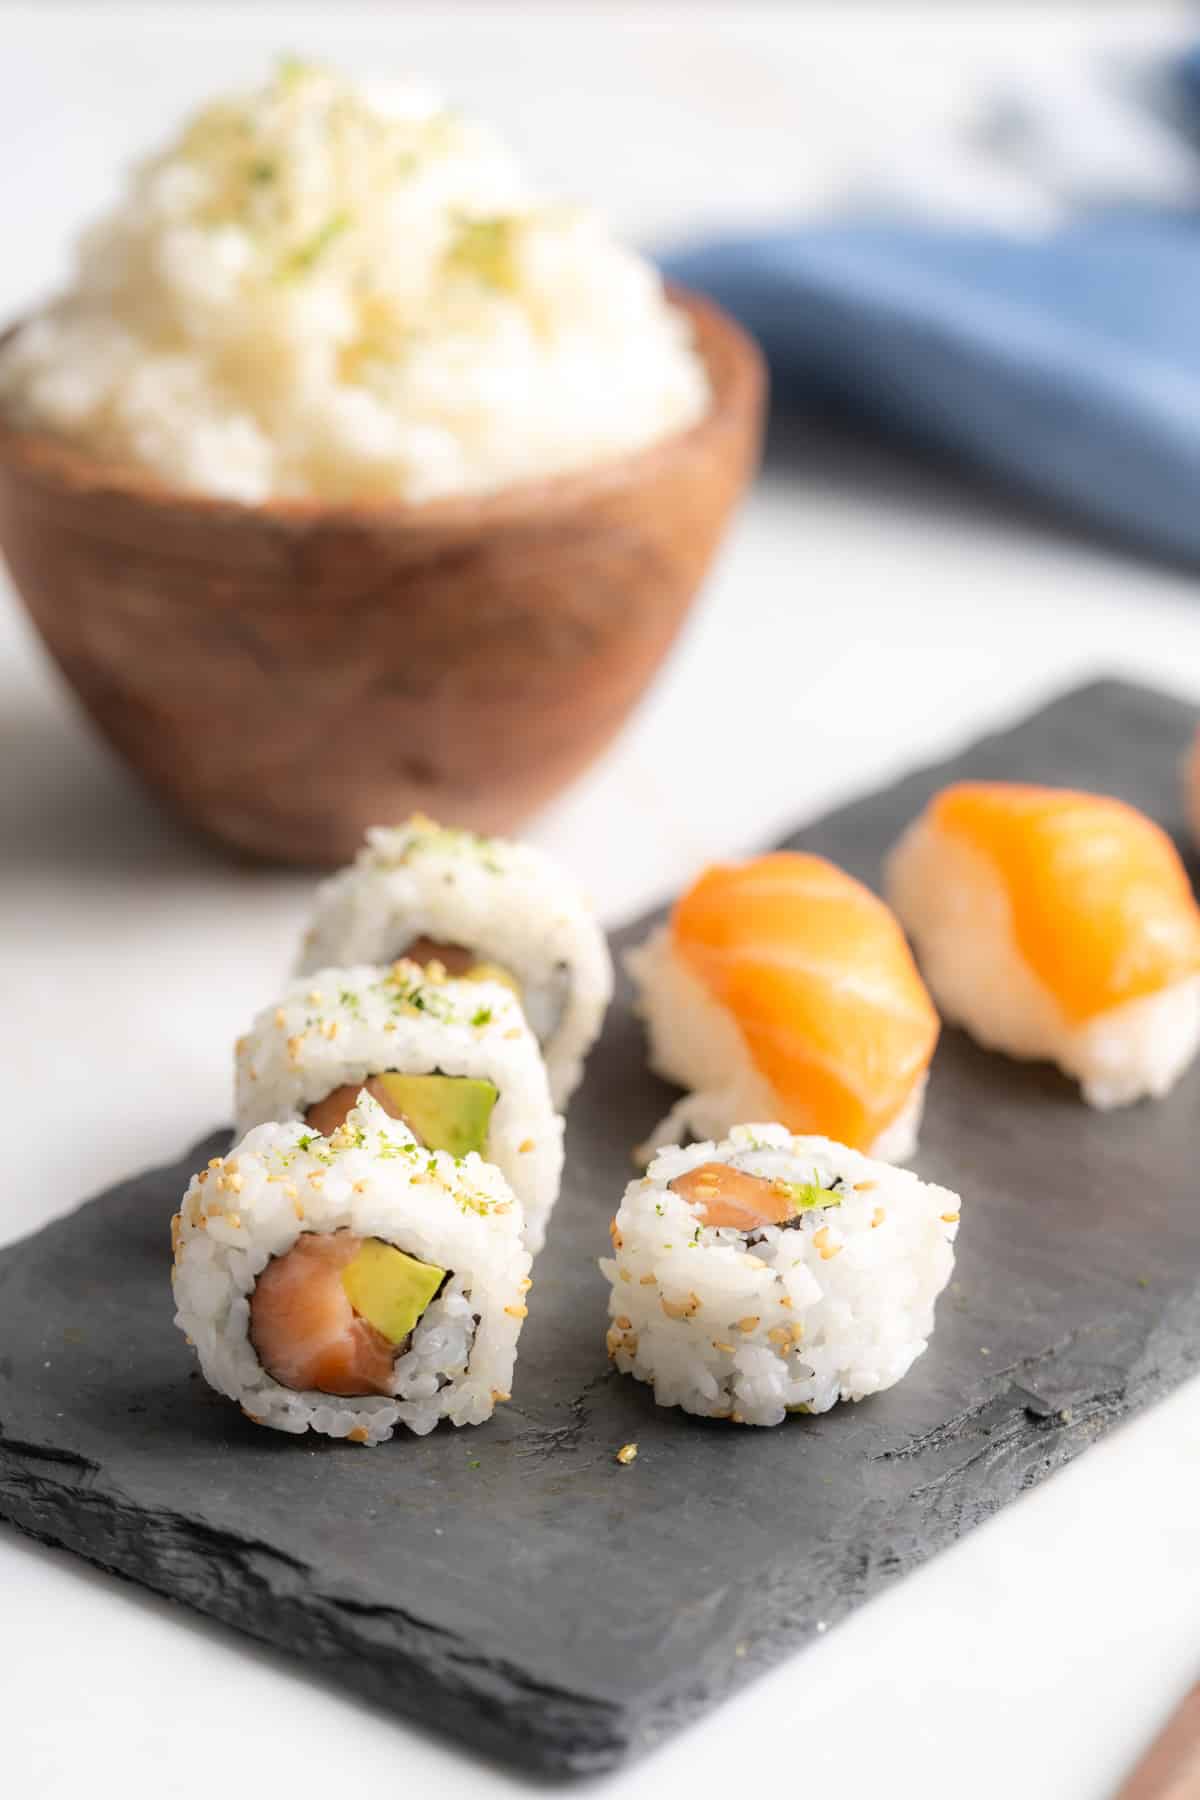 Salmon sushi rolls and nigiri on a tray.